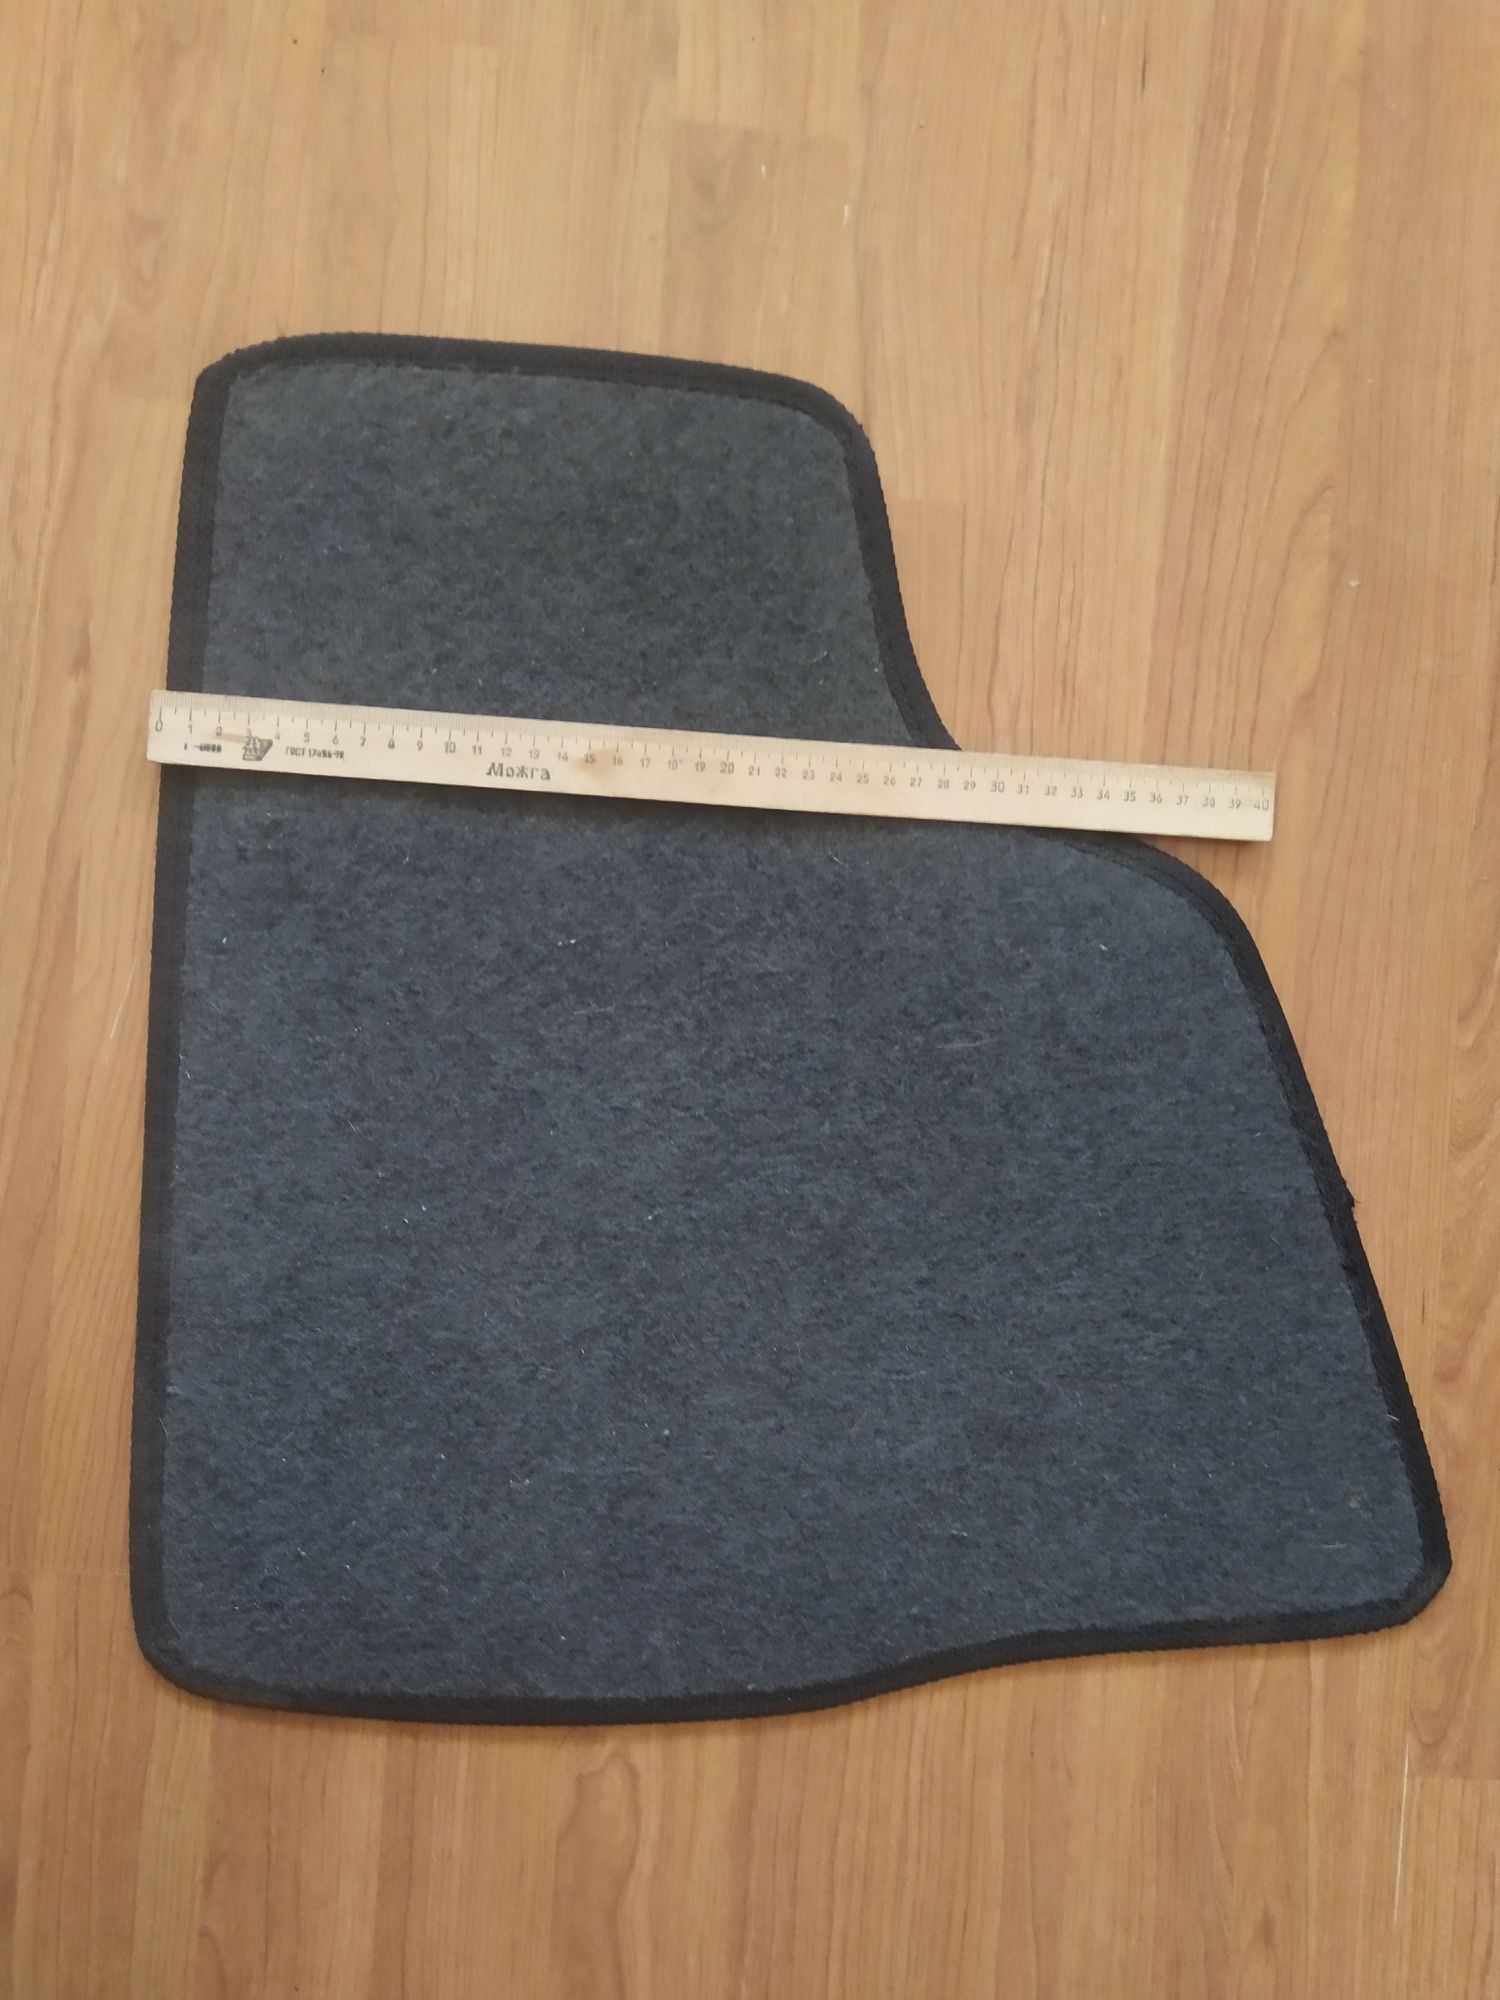 Коврик для автомобиля (текстиль) размер 48*48 см